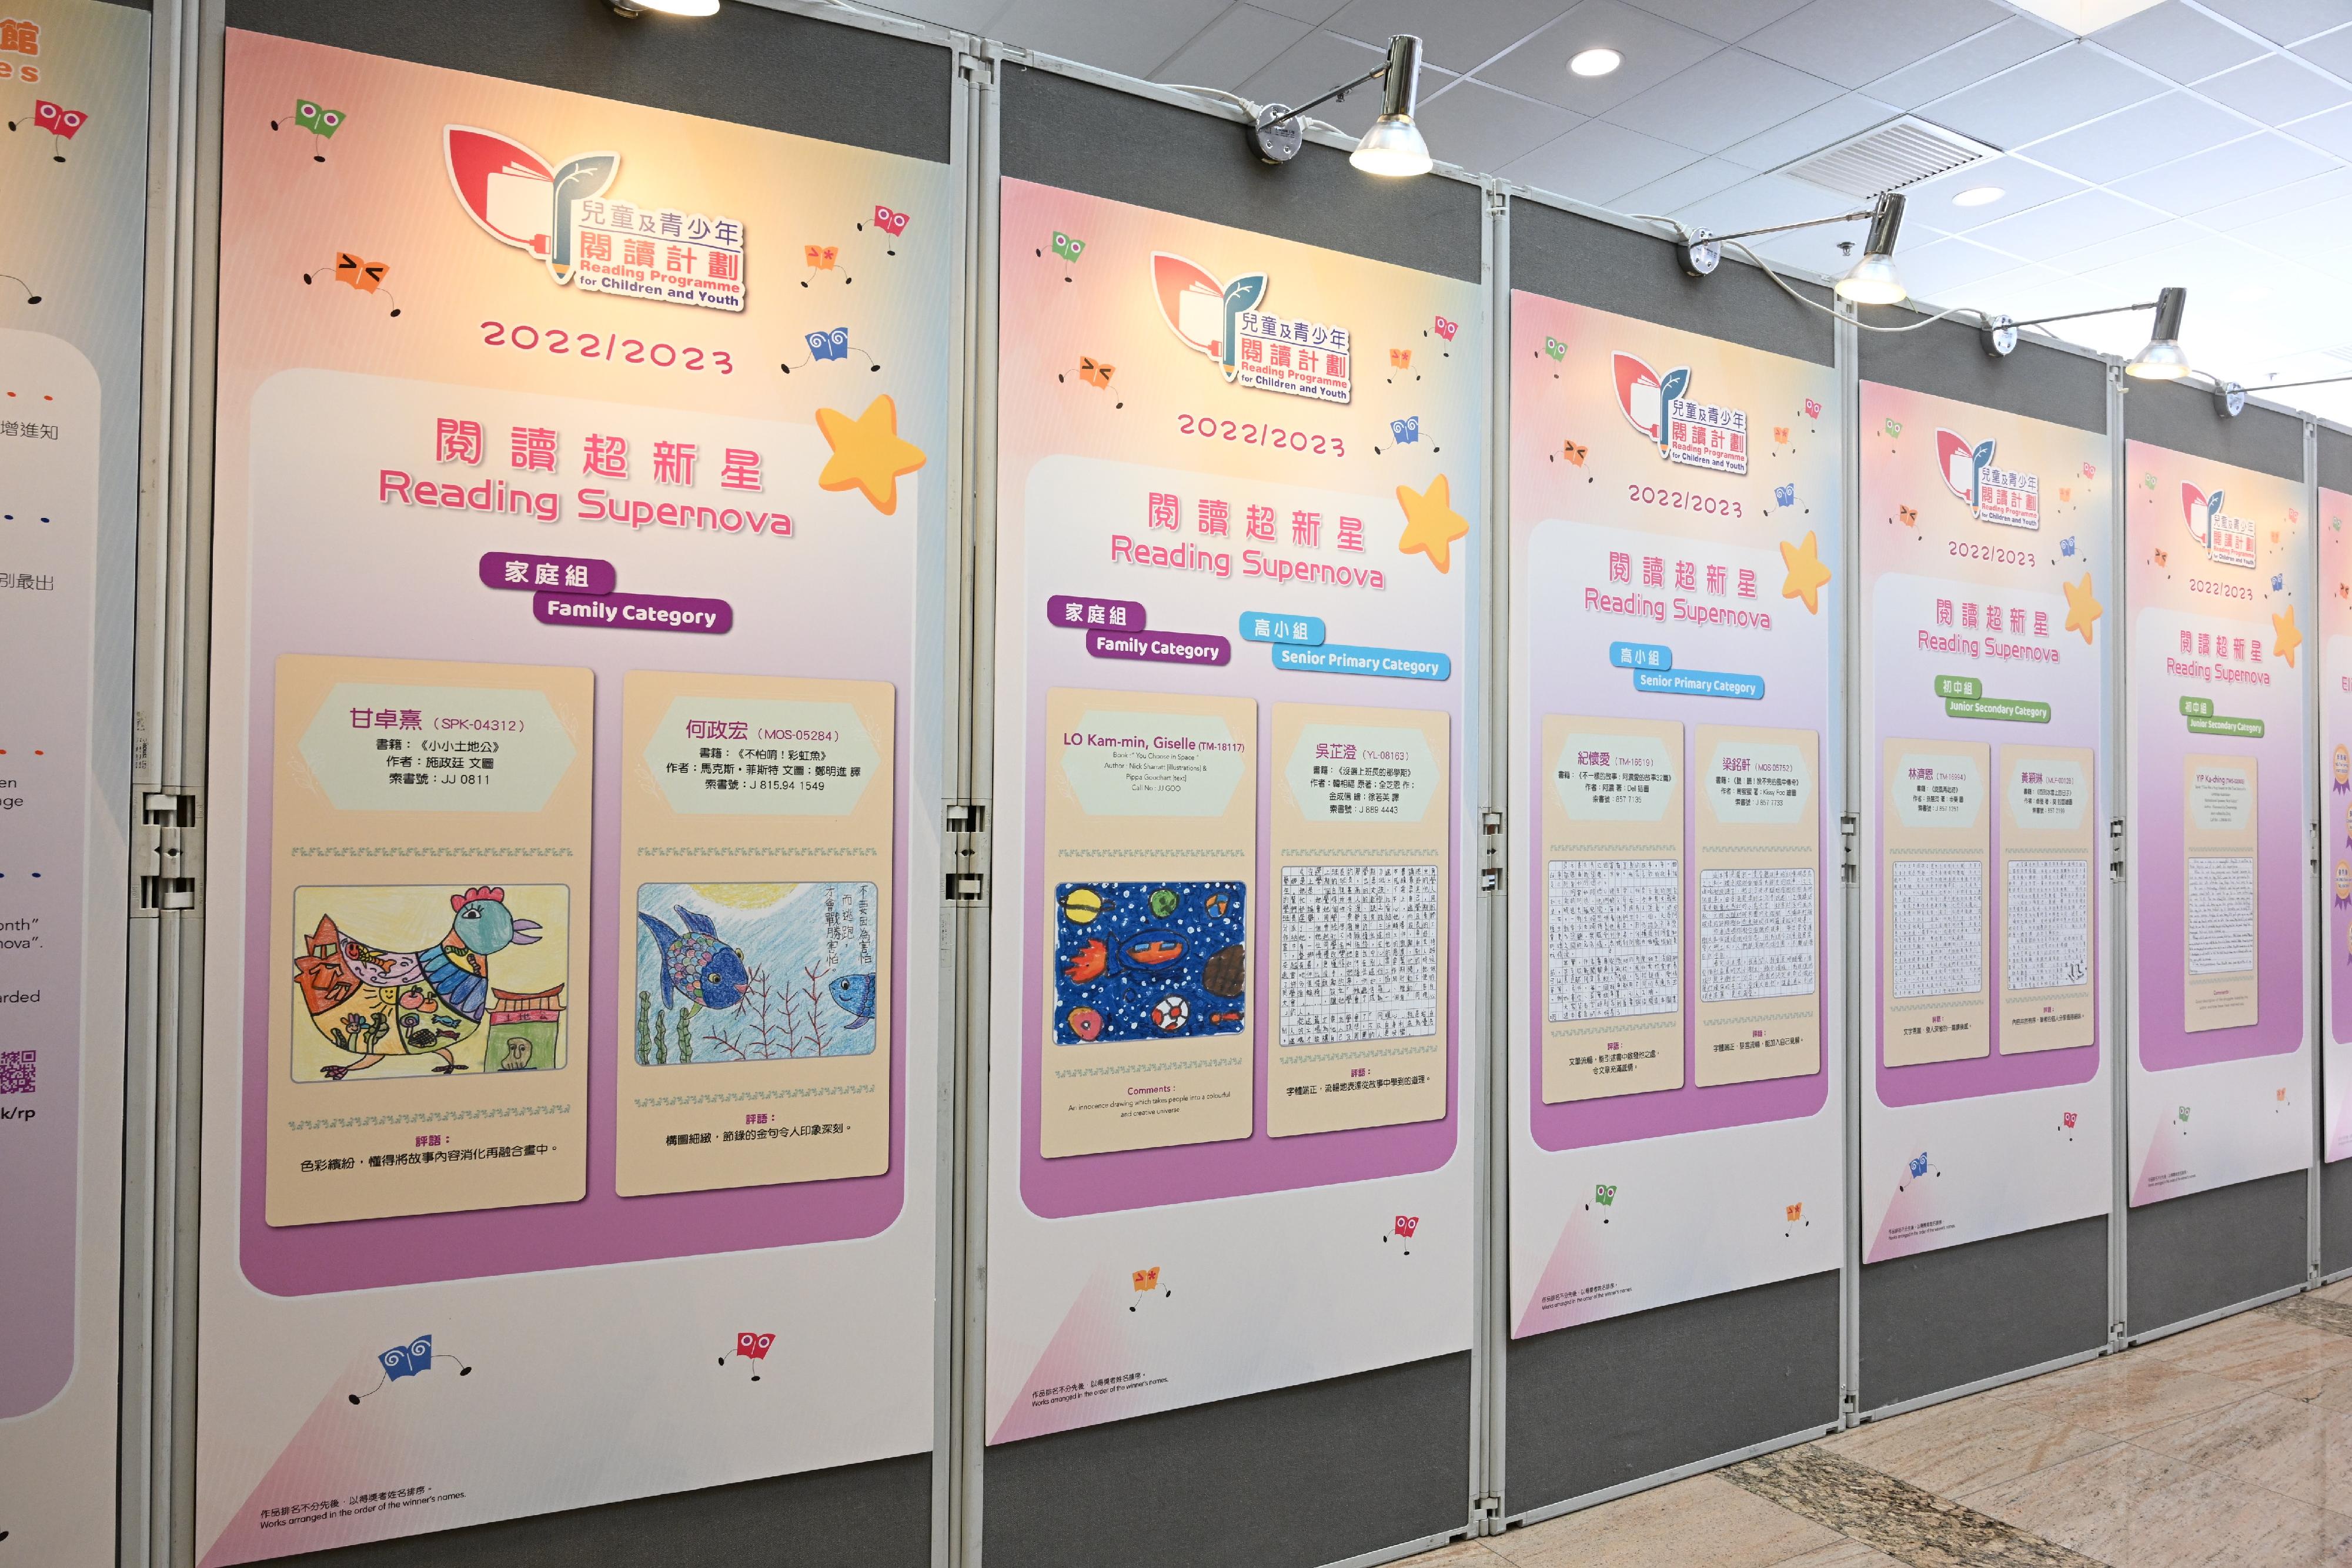 二○二二／二三年度「儿童及青少年阅读计划」的「阅读超新星」获奬作品现于香港中央图书馆地下南门大堂展出至十一月二十二日。有关作品亦会于多间香港公共图书馆作巡回展览。